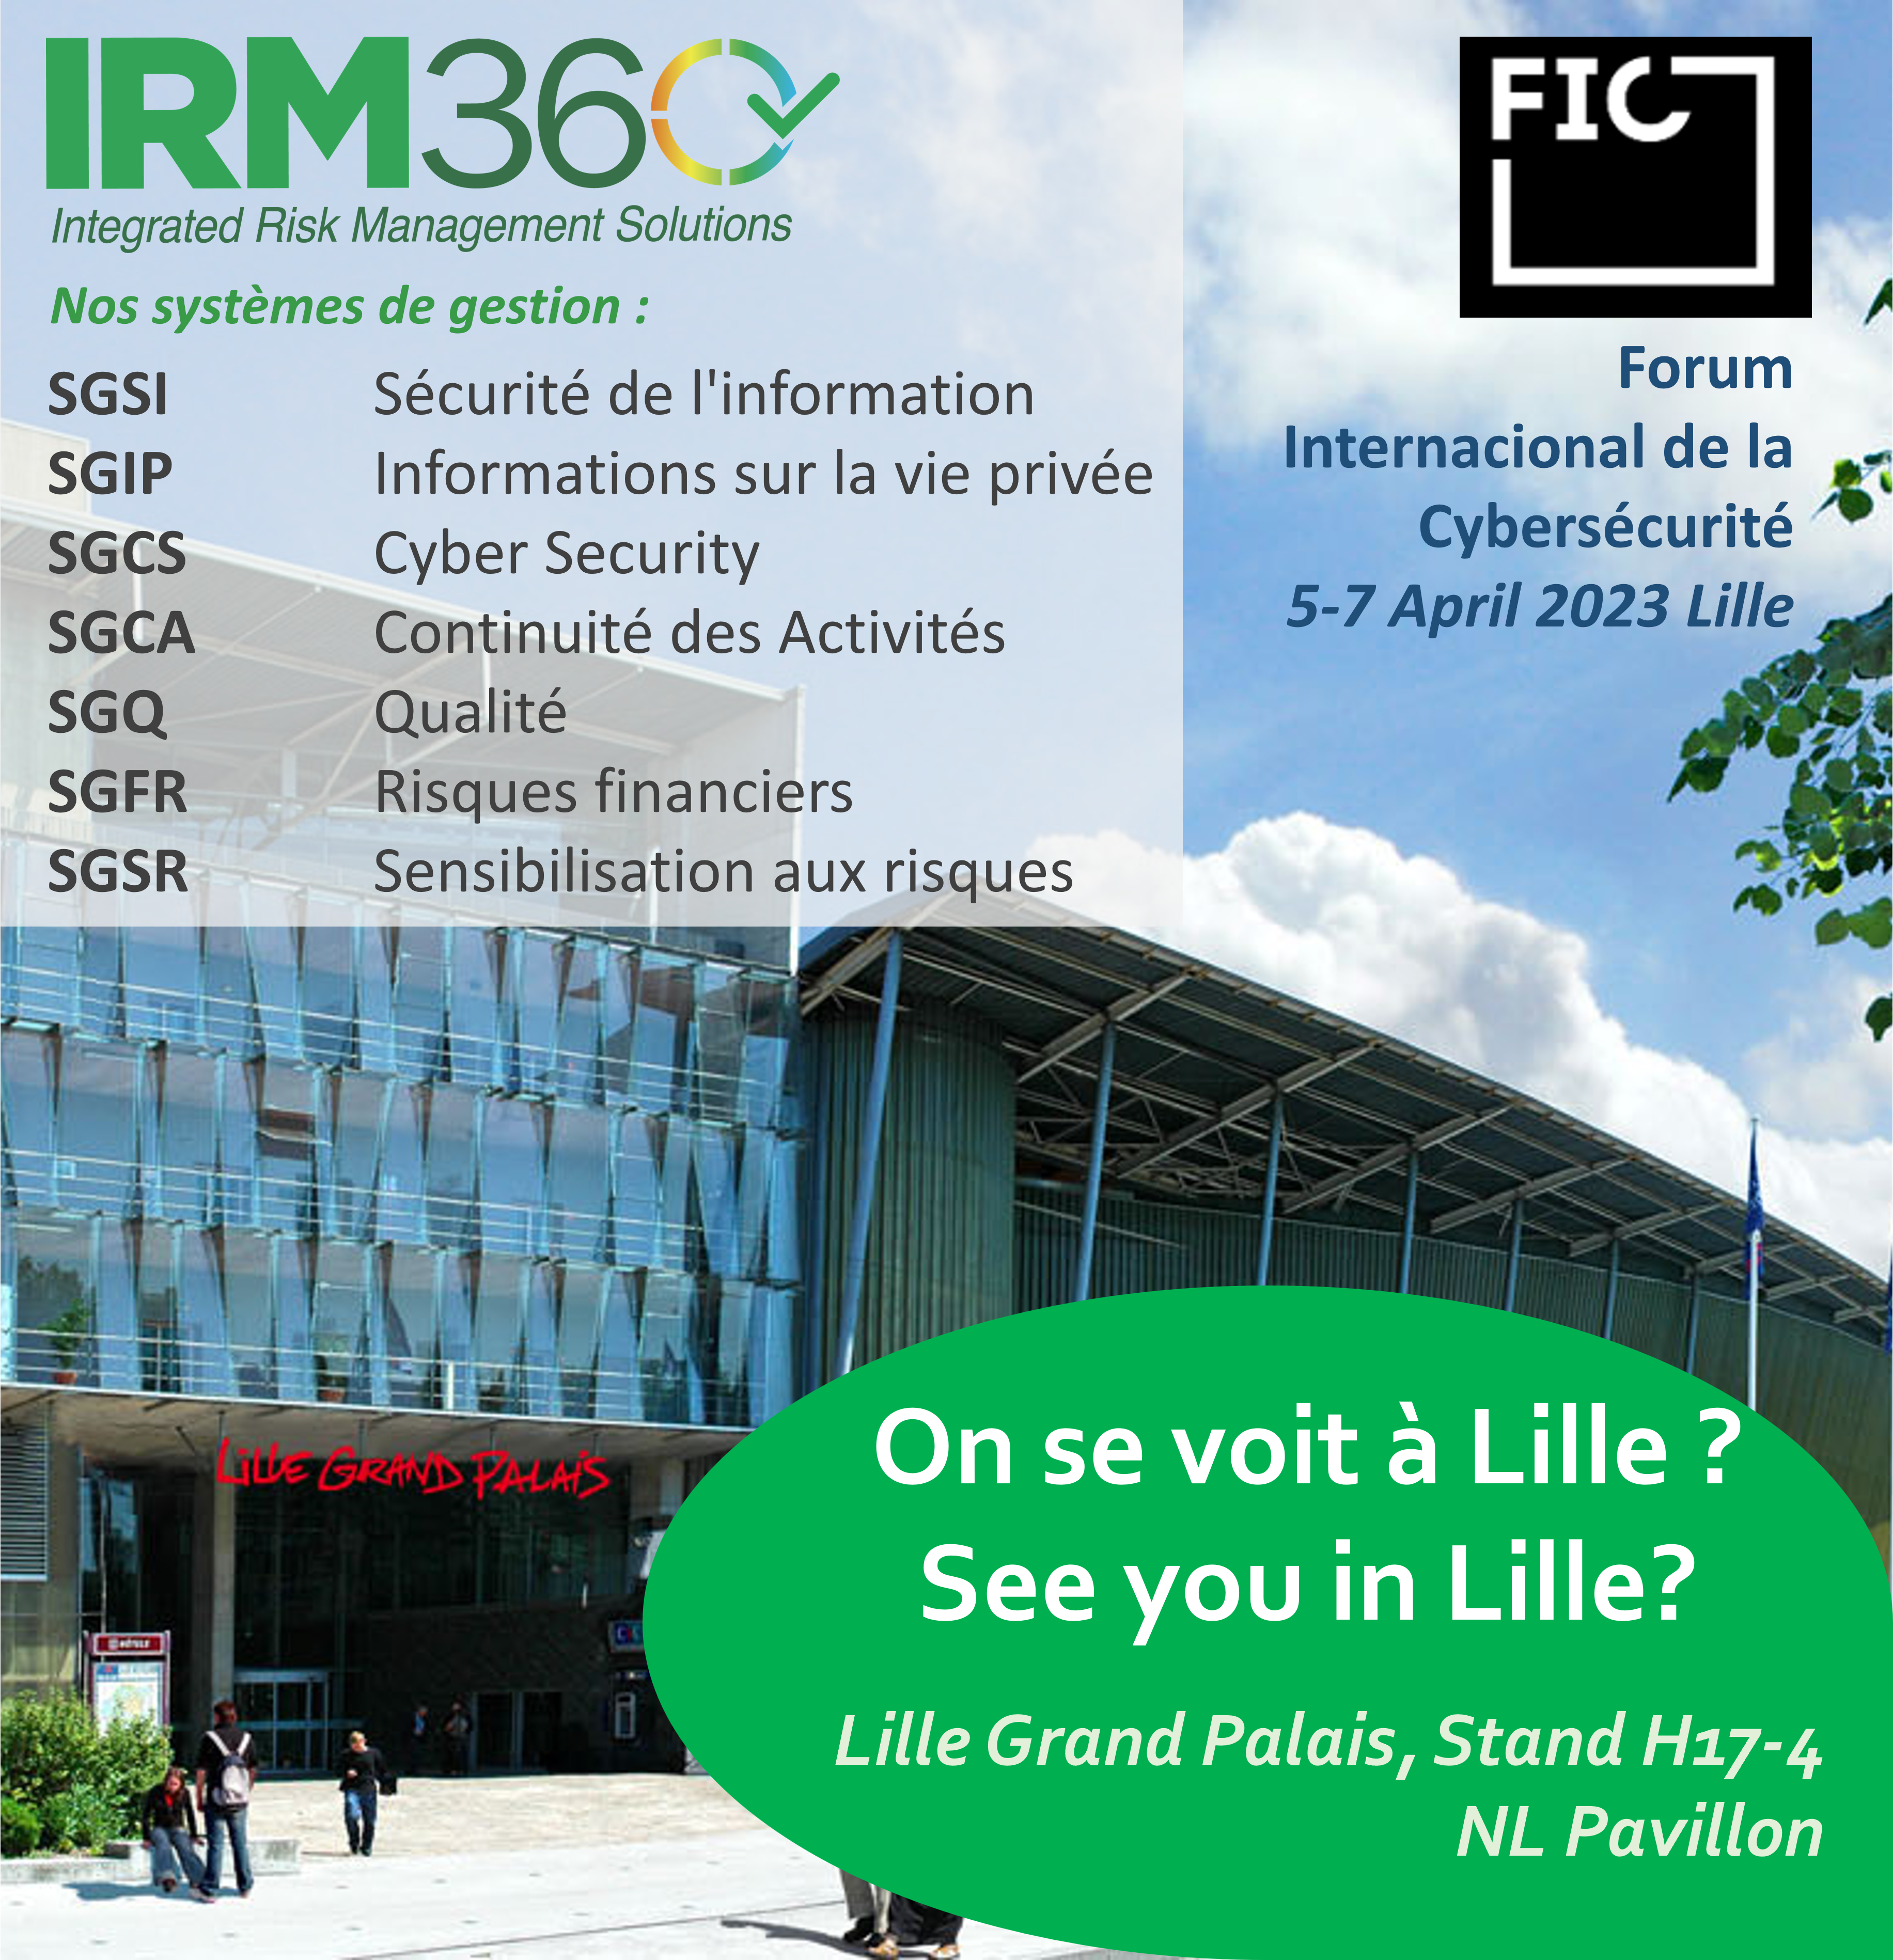 IRM360 presente no FIC em Lille